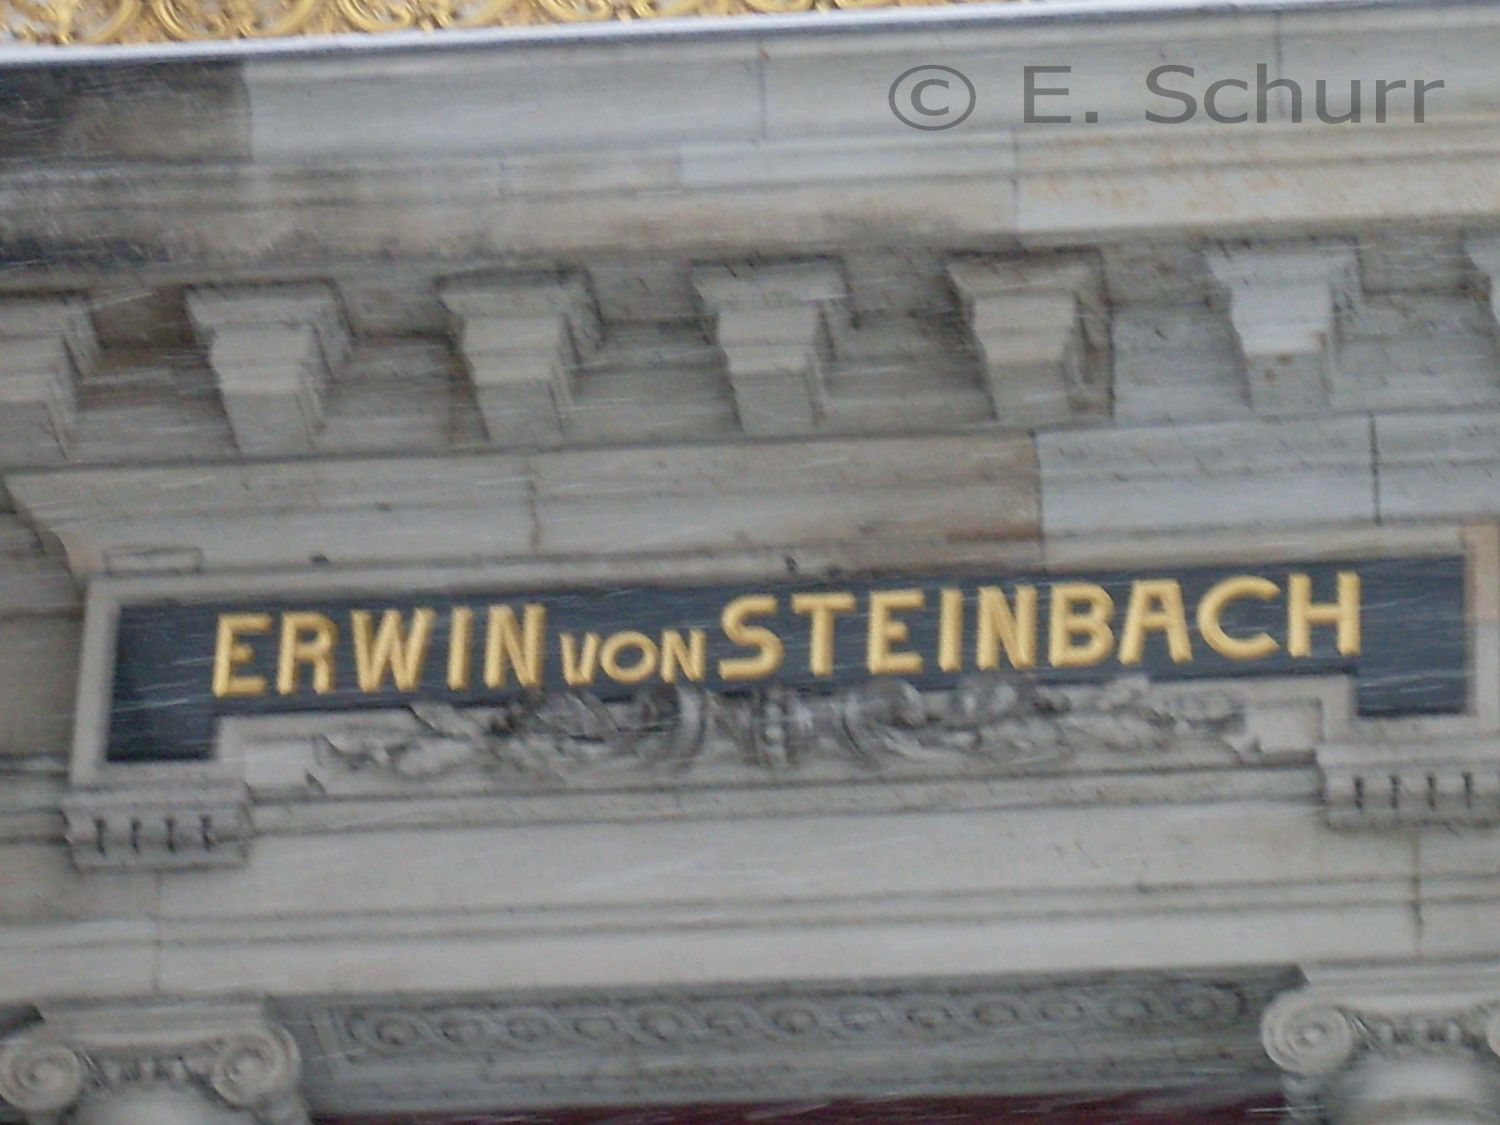 Inschriften an der Akademie der Bildenden Künste Dresden